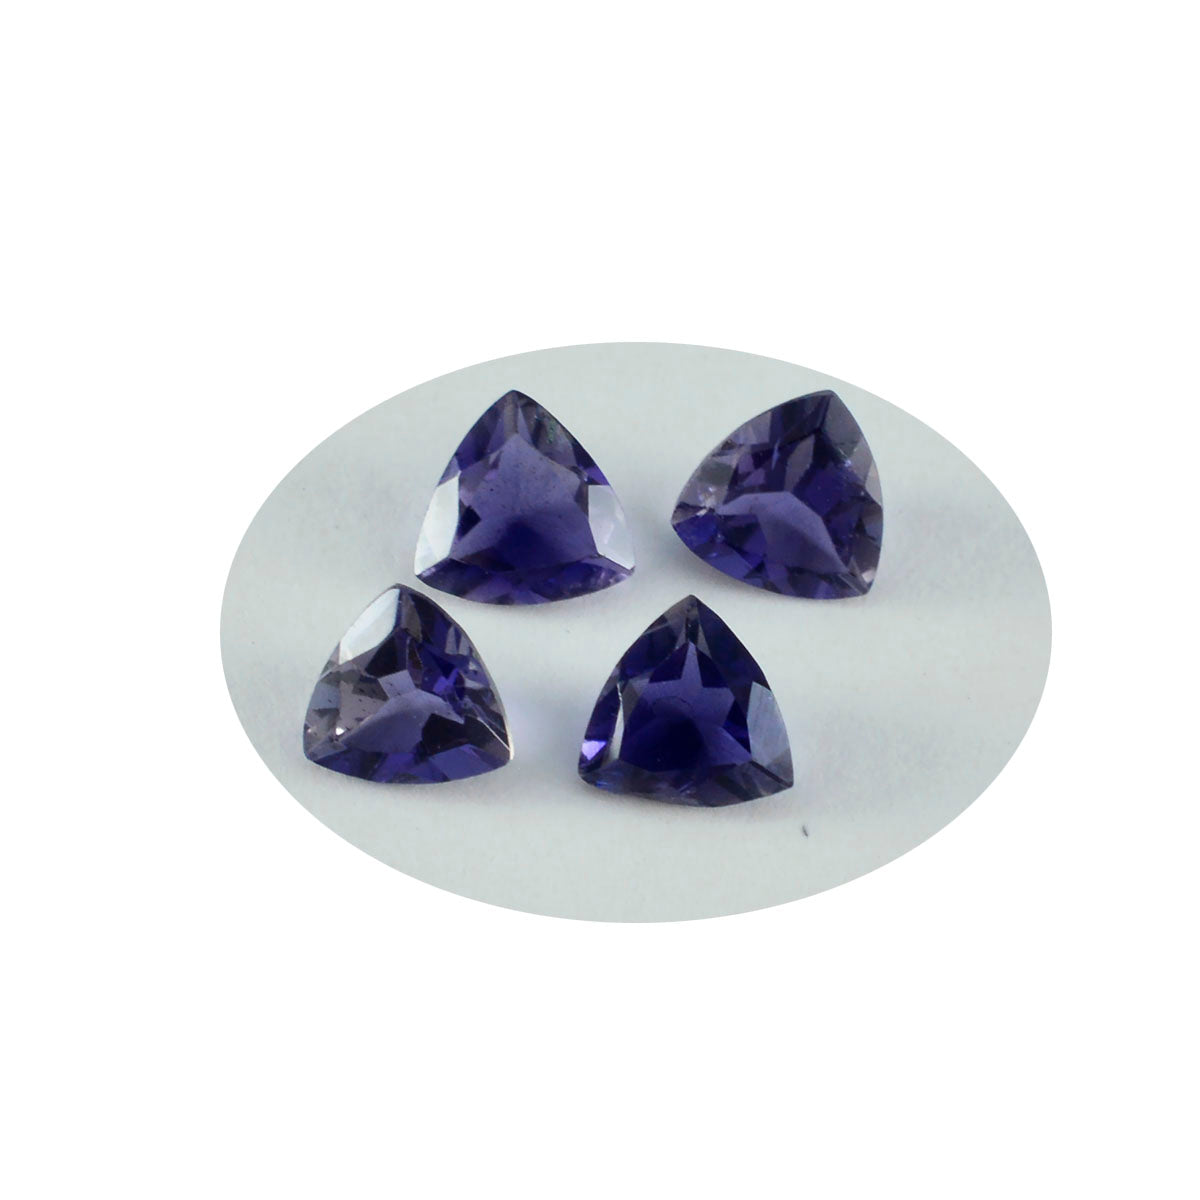 riyogems 1 шт. синий иолит ограненный 9x9 мм драгоценные камни в форме триллиона прекрасного качества